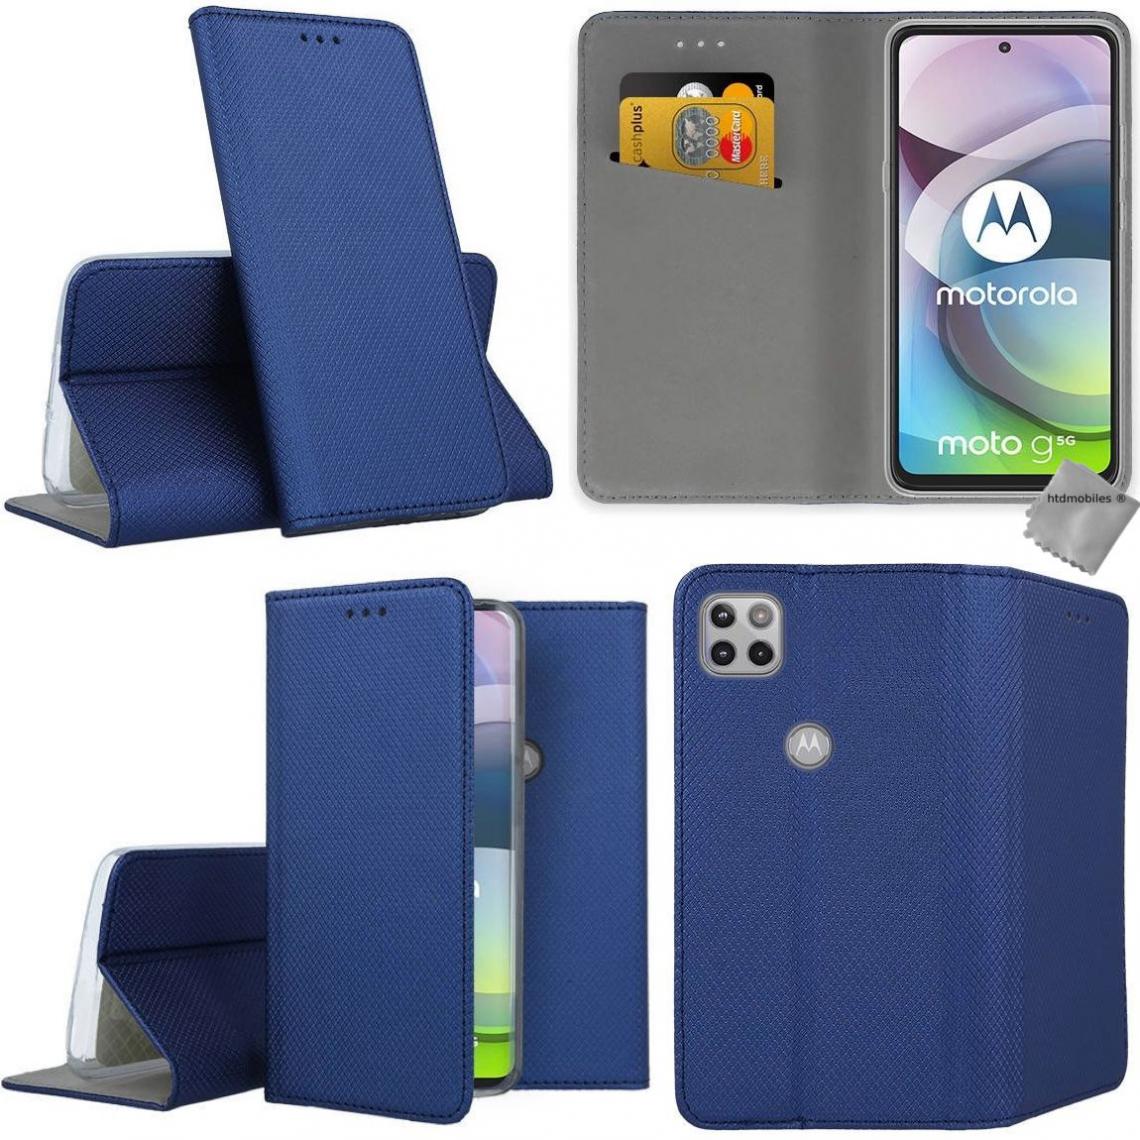 Htdmobiles - Housse etui coque pochette portefeuille pour Motorola Moto G 5G + verre trempe - BLEU MAGNET - Coque, étui smartphone